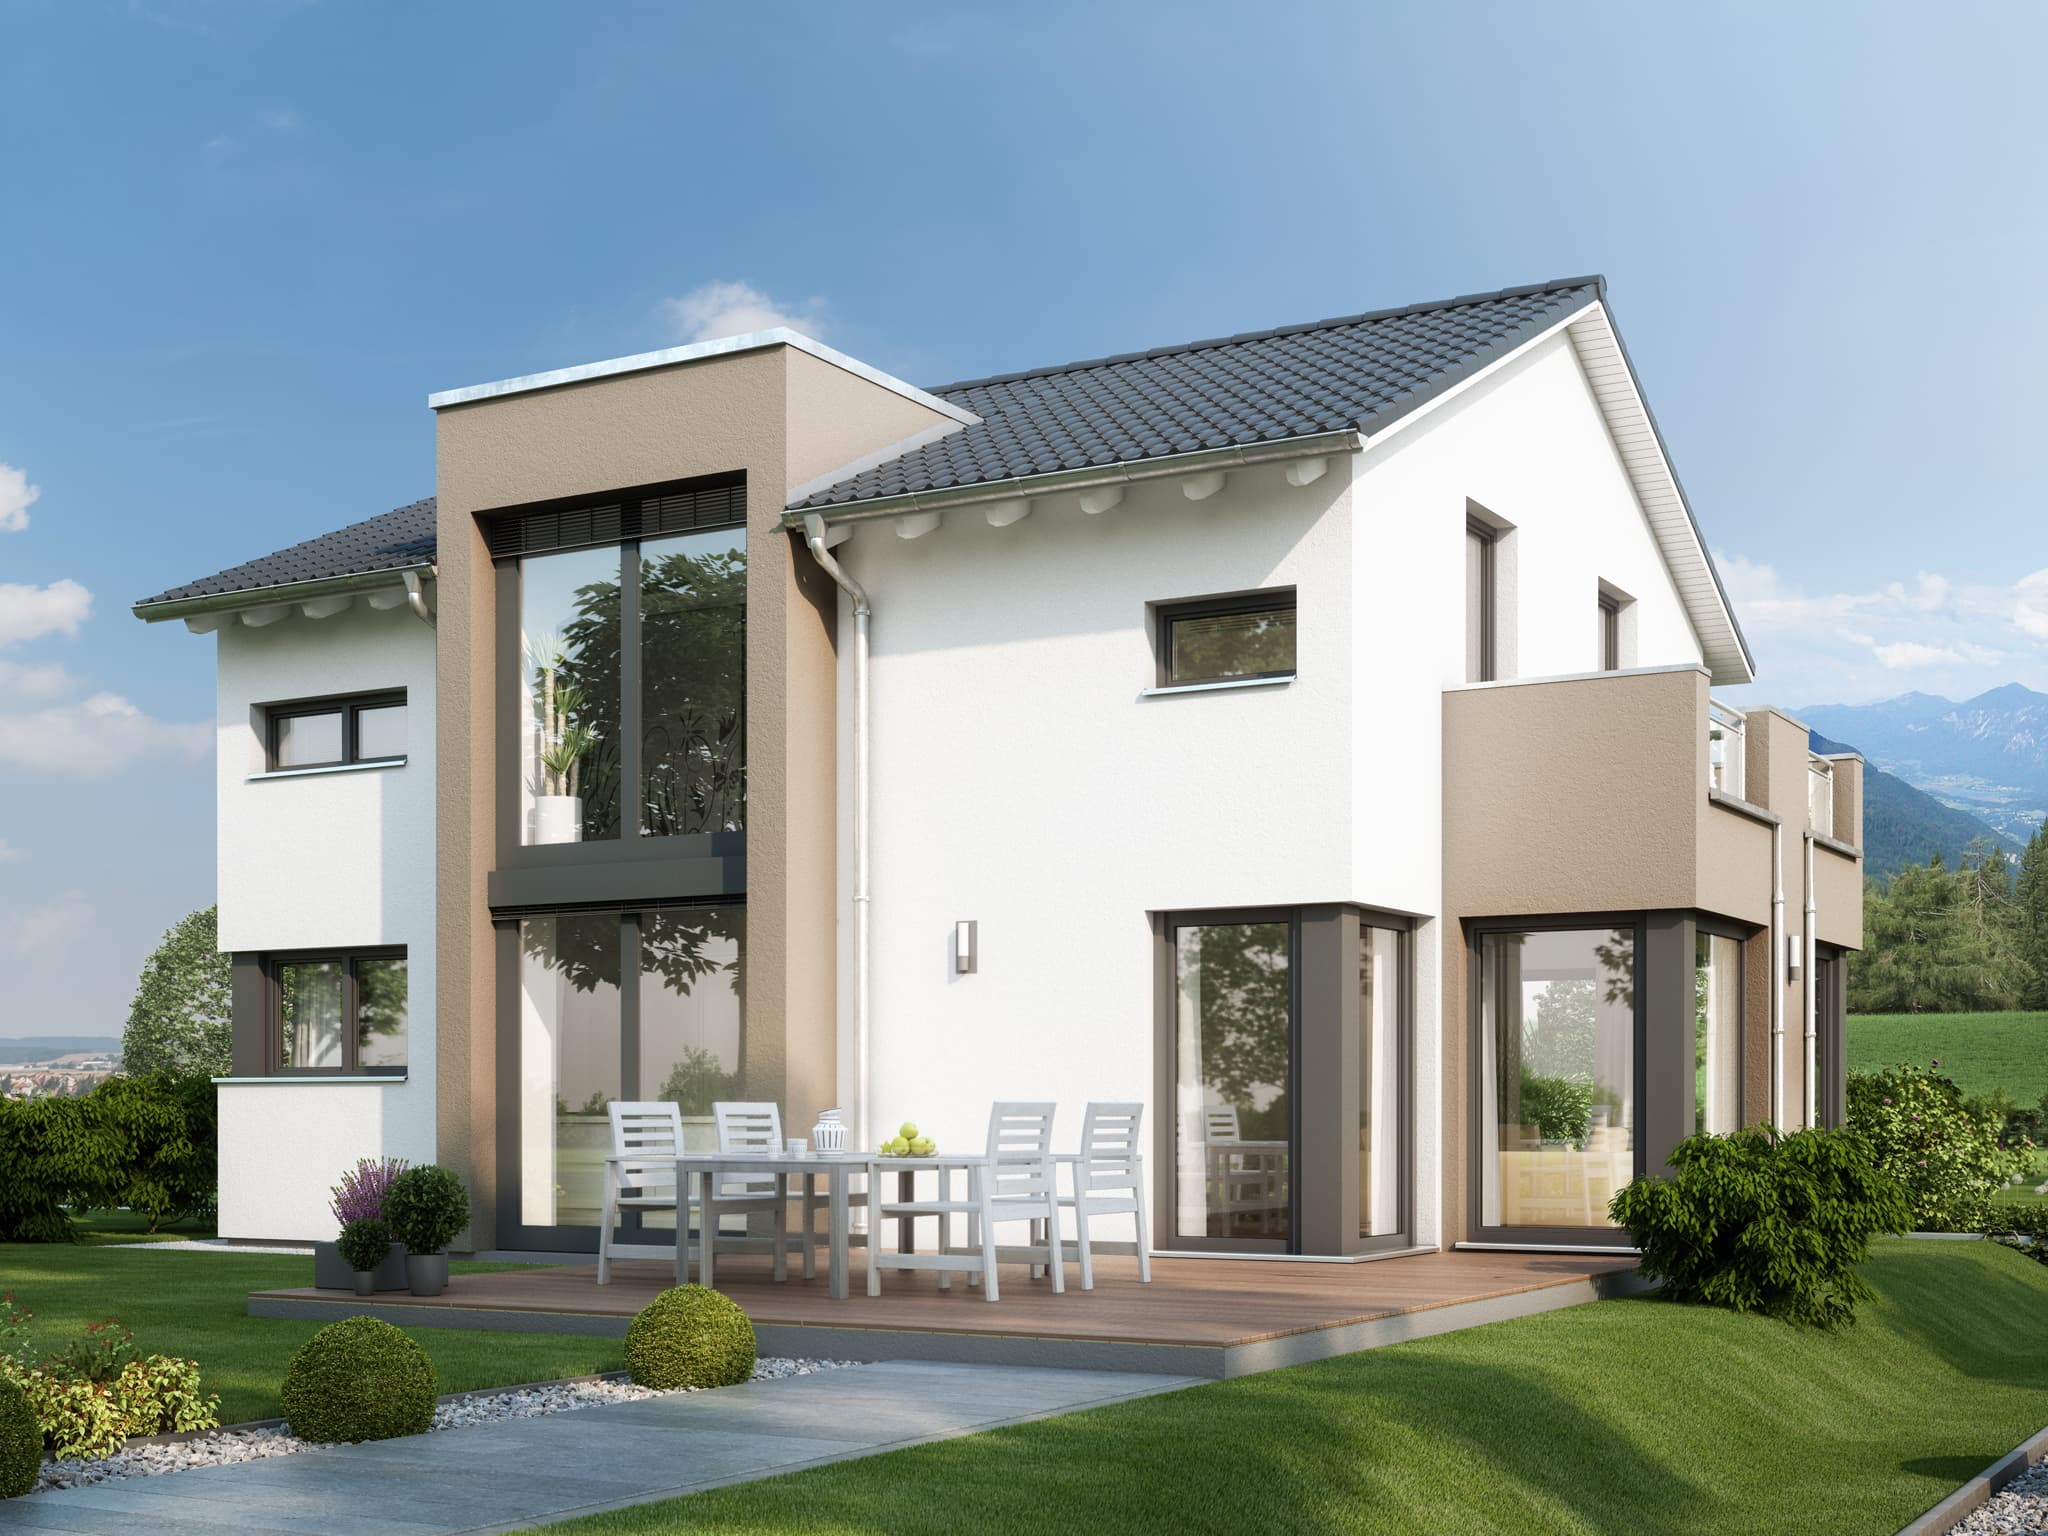 Fertighaus modern mit Satteldach, Quergiebel & Wintergarten Erker mit Balkon - Haus bauen Ideen Bien Zenker Einfamilienhaus EVOLUTION 134 V6 - HausbauDirekt.de